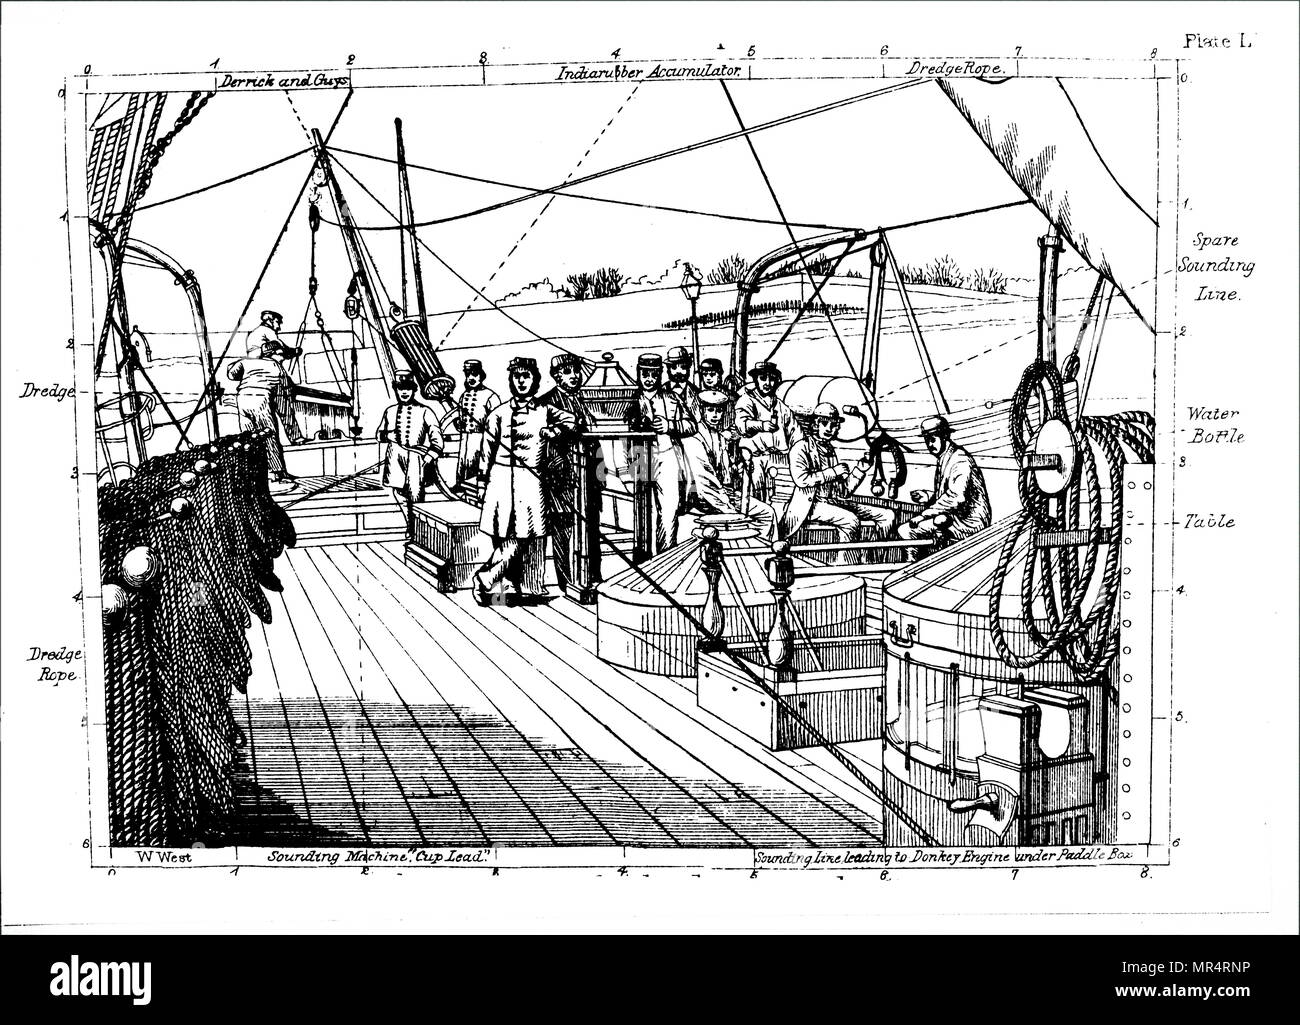 Grabado representando el equipo de dragado de aguas profundas usado en la HMS Porcupine durante su viaje en el verano de 1869. Fecha del siglo XIX Foto de stock